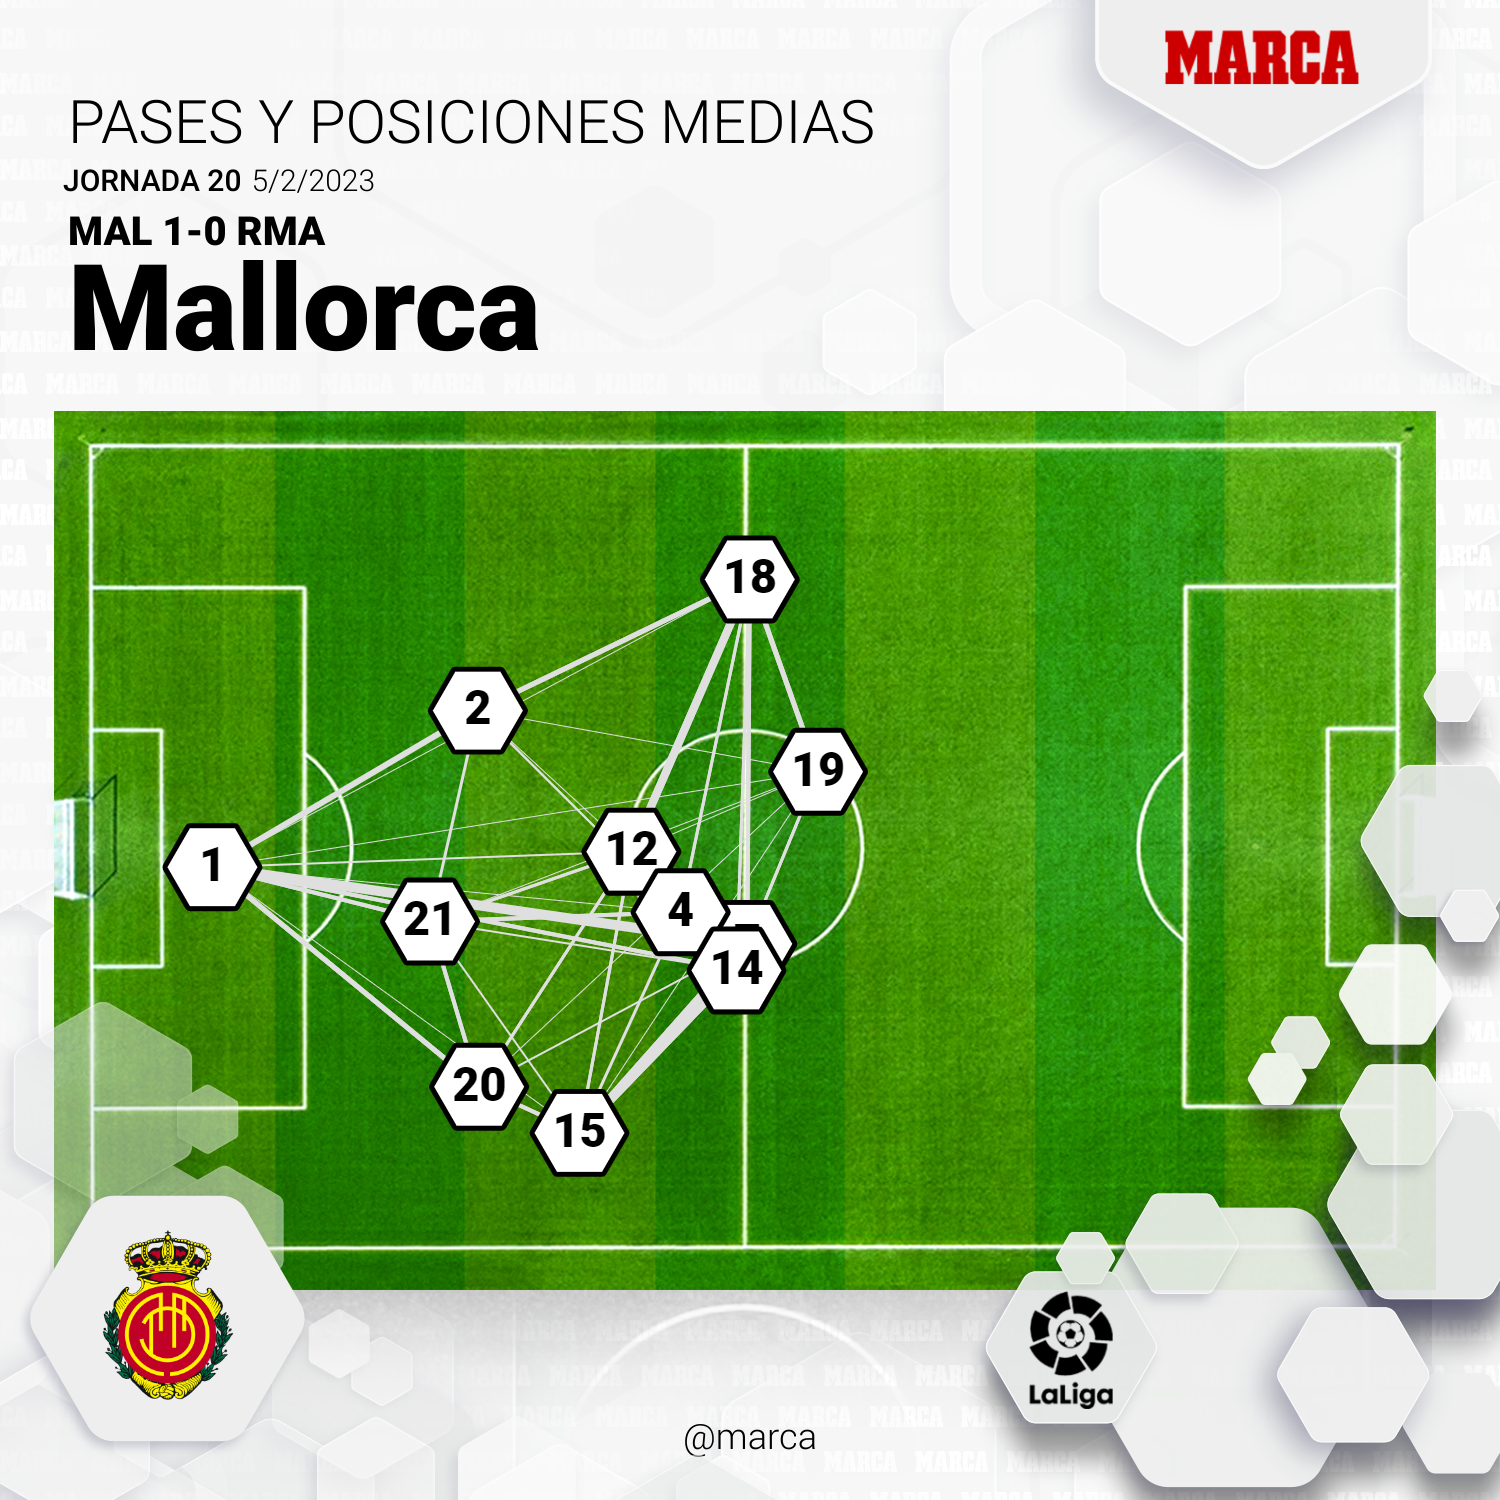 El mapa de pases y posiciones medias del Mallorca ante el Real Madrid.